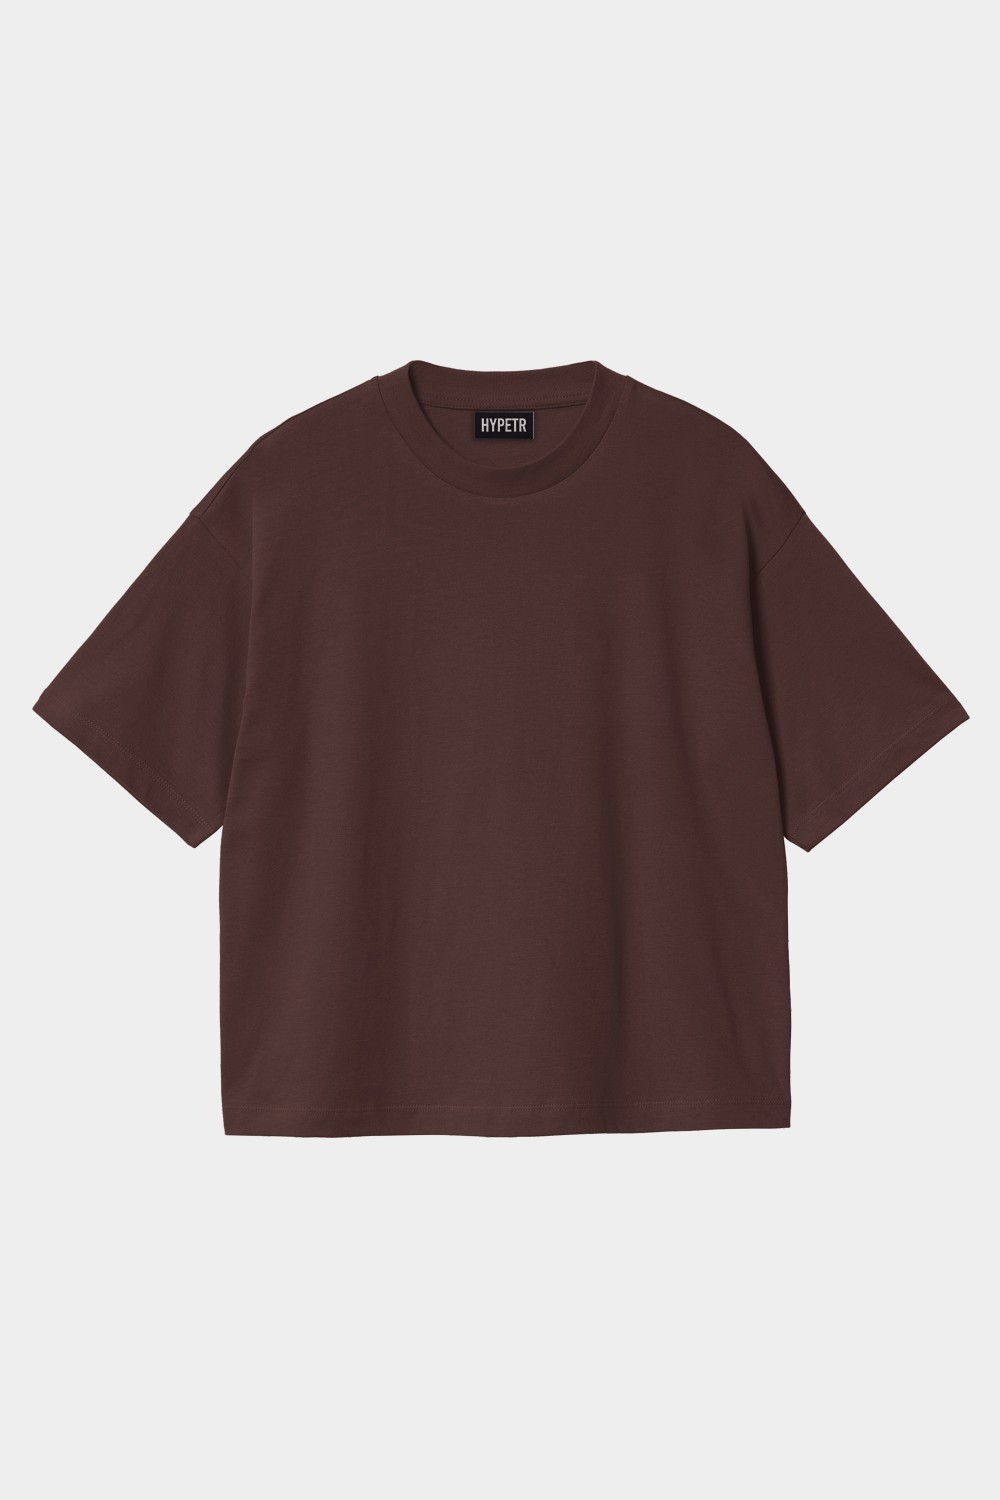 Oversized Basic T Shirt (HYPE-13)